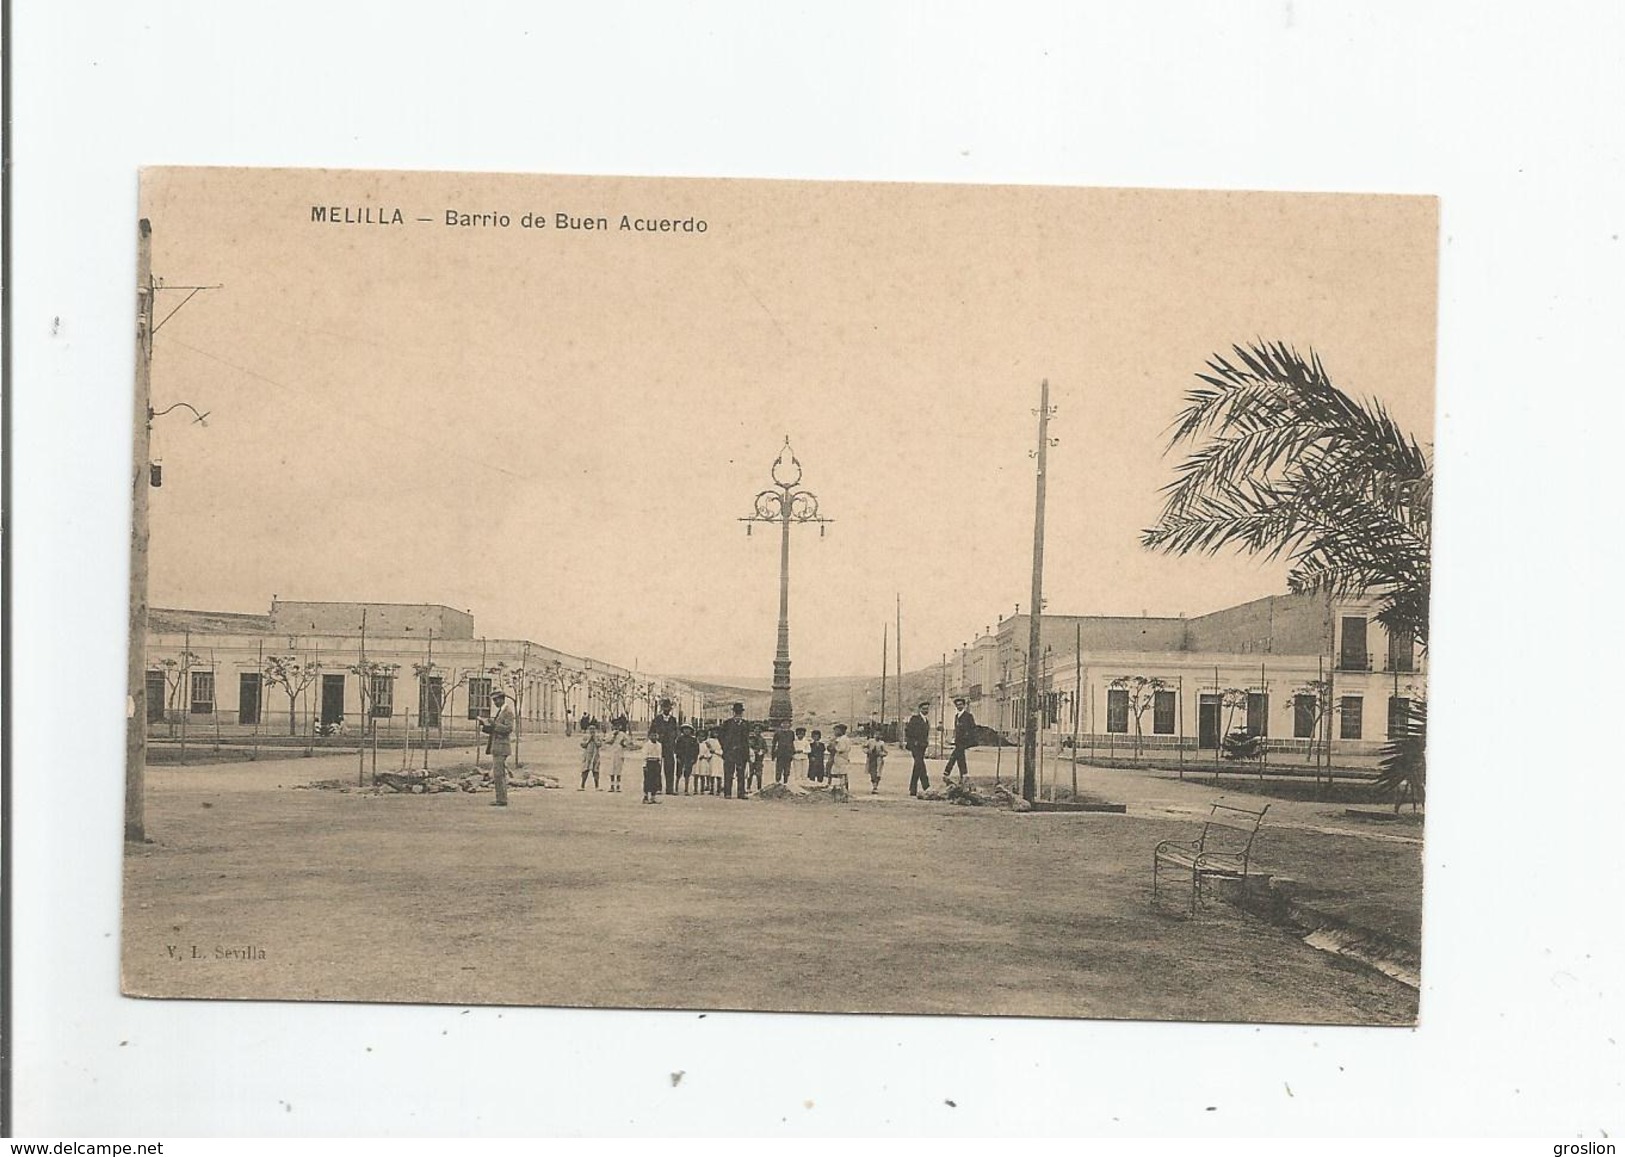 MELILLA BARRIO DE BUEN ACUERDO - Melilla